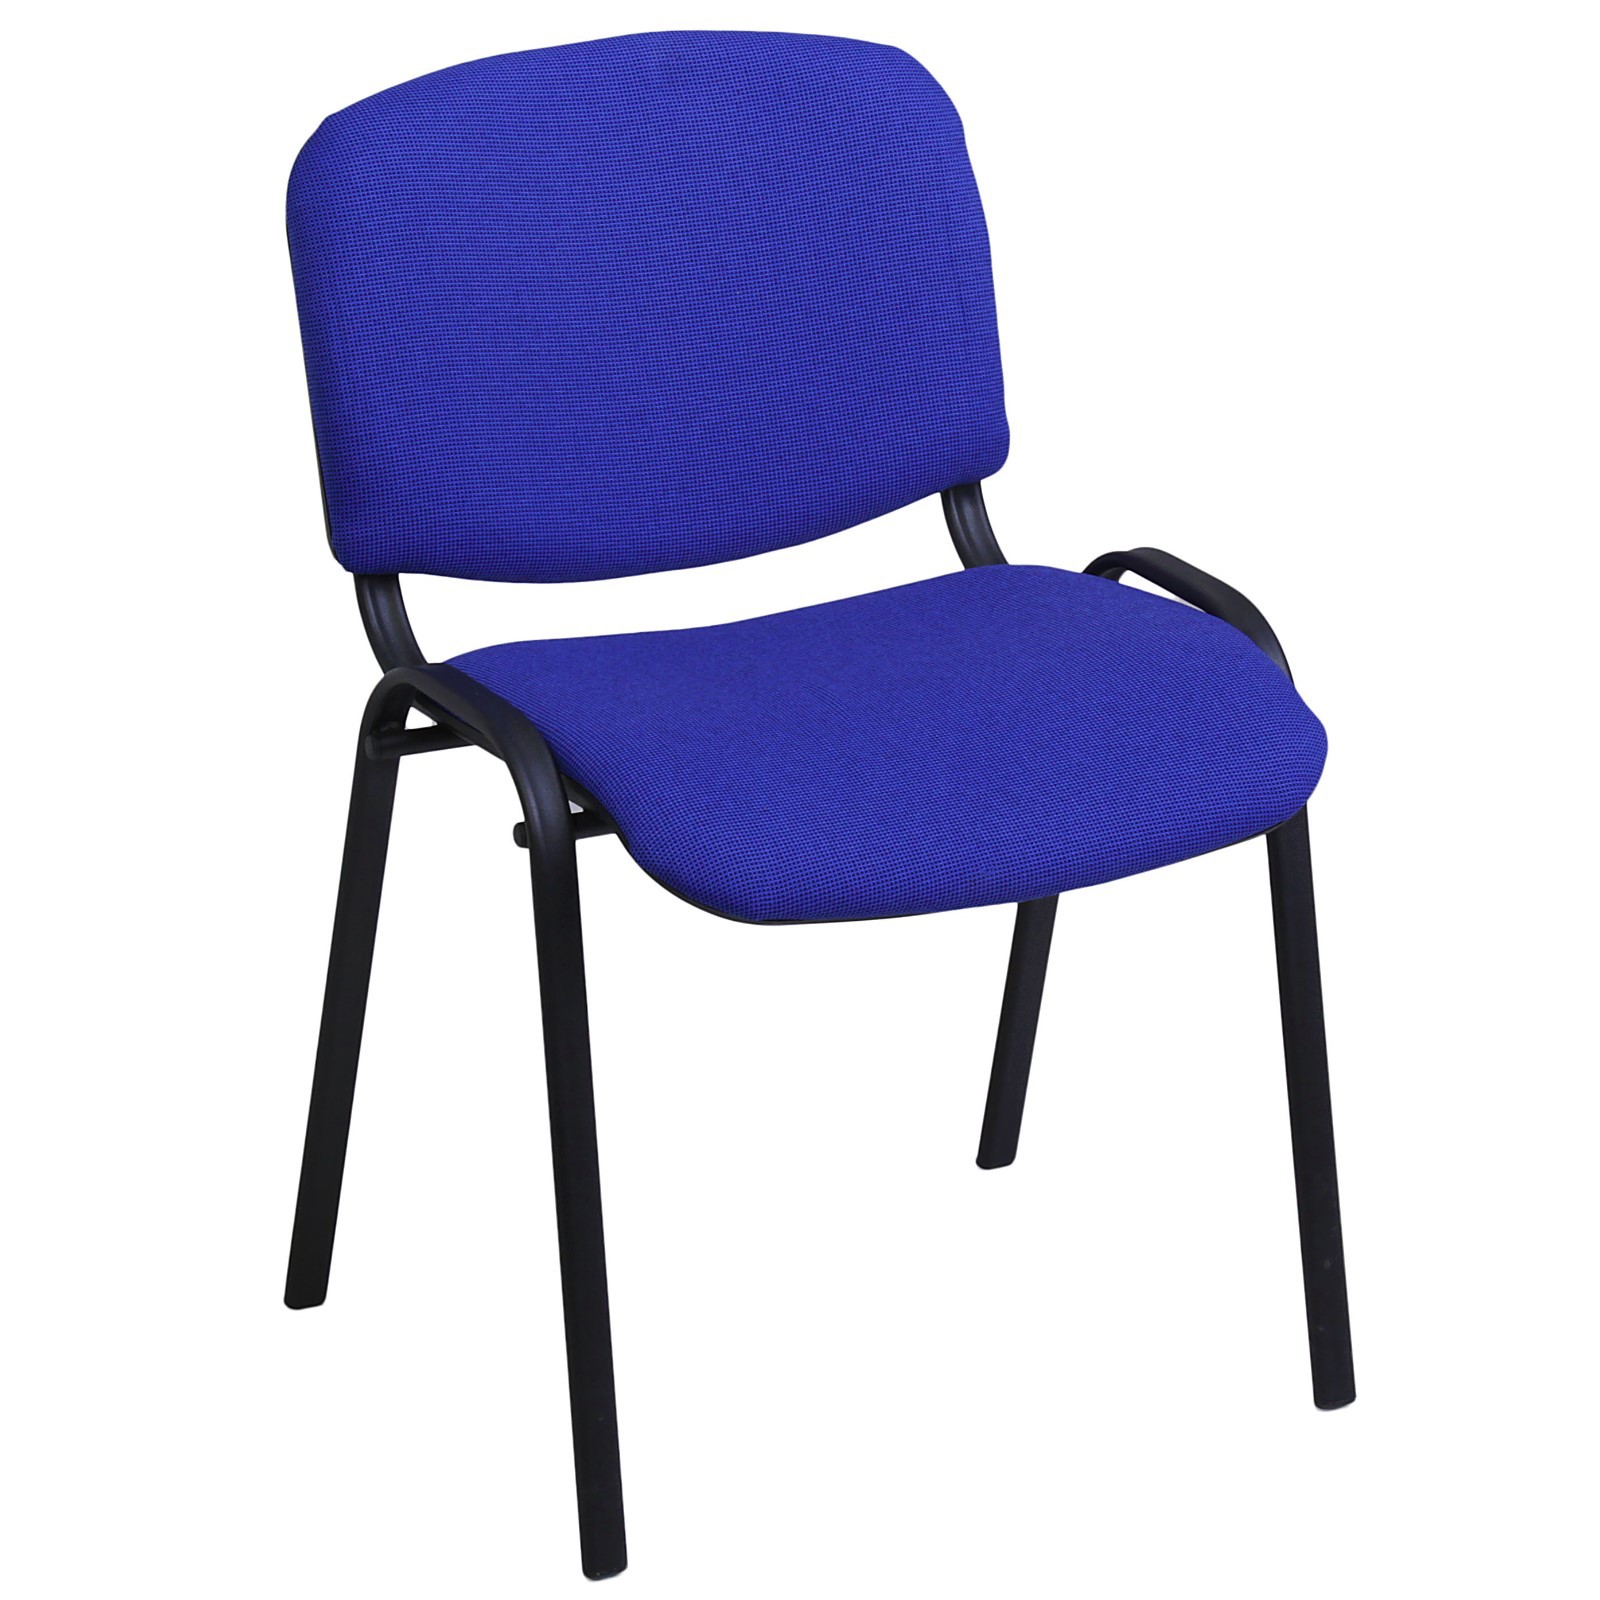 Изо стул (ткань ТК-10 синий/черный, каркас черный)